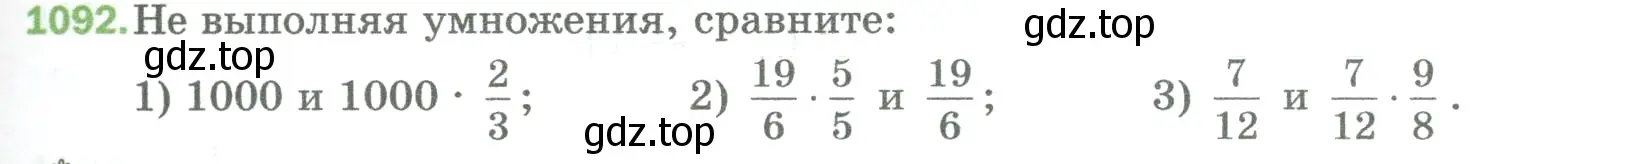 Условие номер 1092 (страница 245) гдз по математике 5 класс Мерзляк, Полонский, учебник